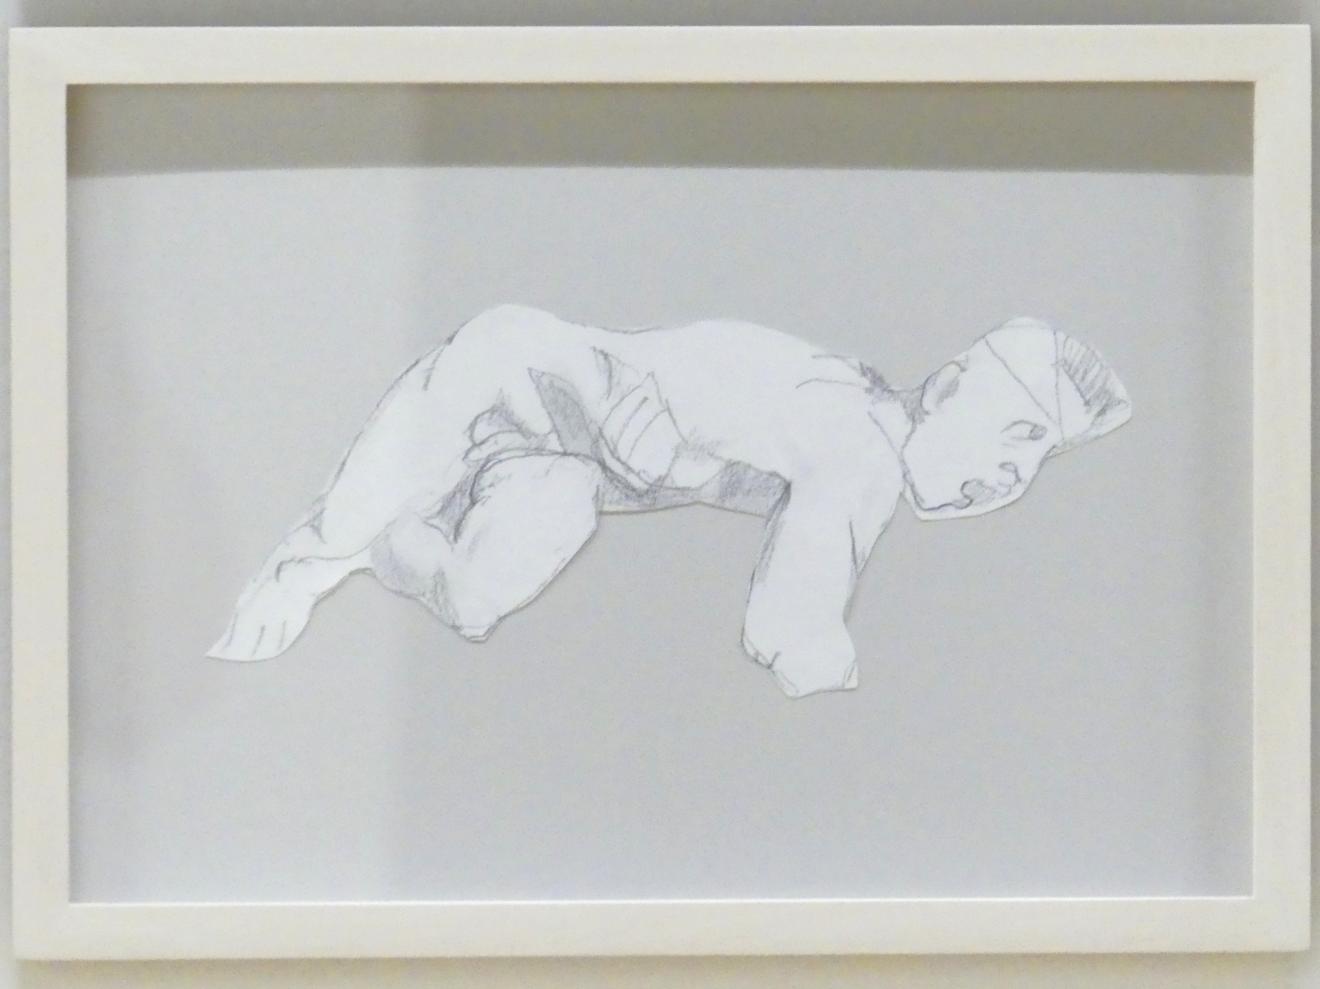 Maria Lassnig (1945–2011), Ohne Titel, München, Lenbachhaus, Kunstbau, Ausstellung "BODY CHECK" vom 21.05.-15.09.2019, um 2006, Bild 8/12